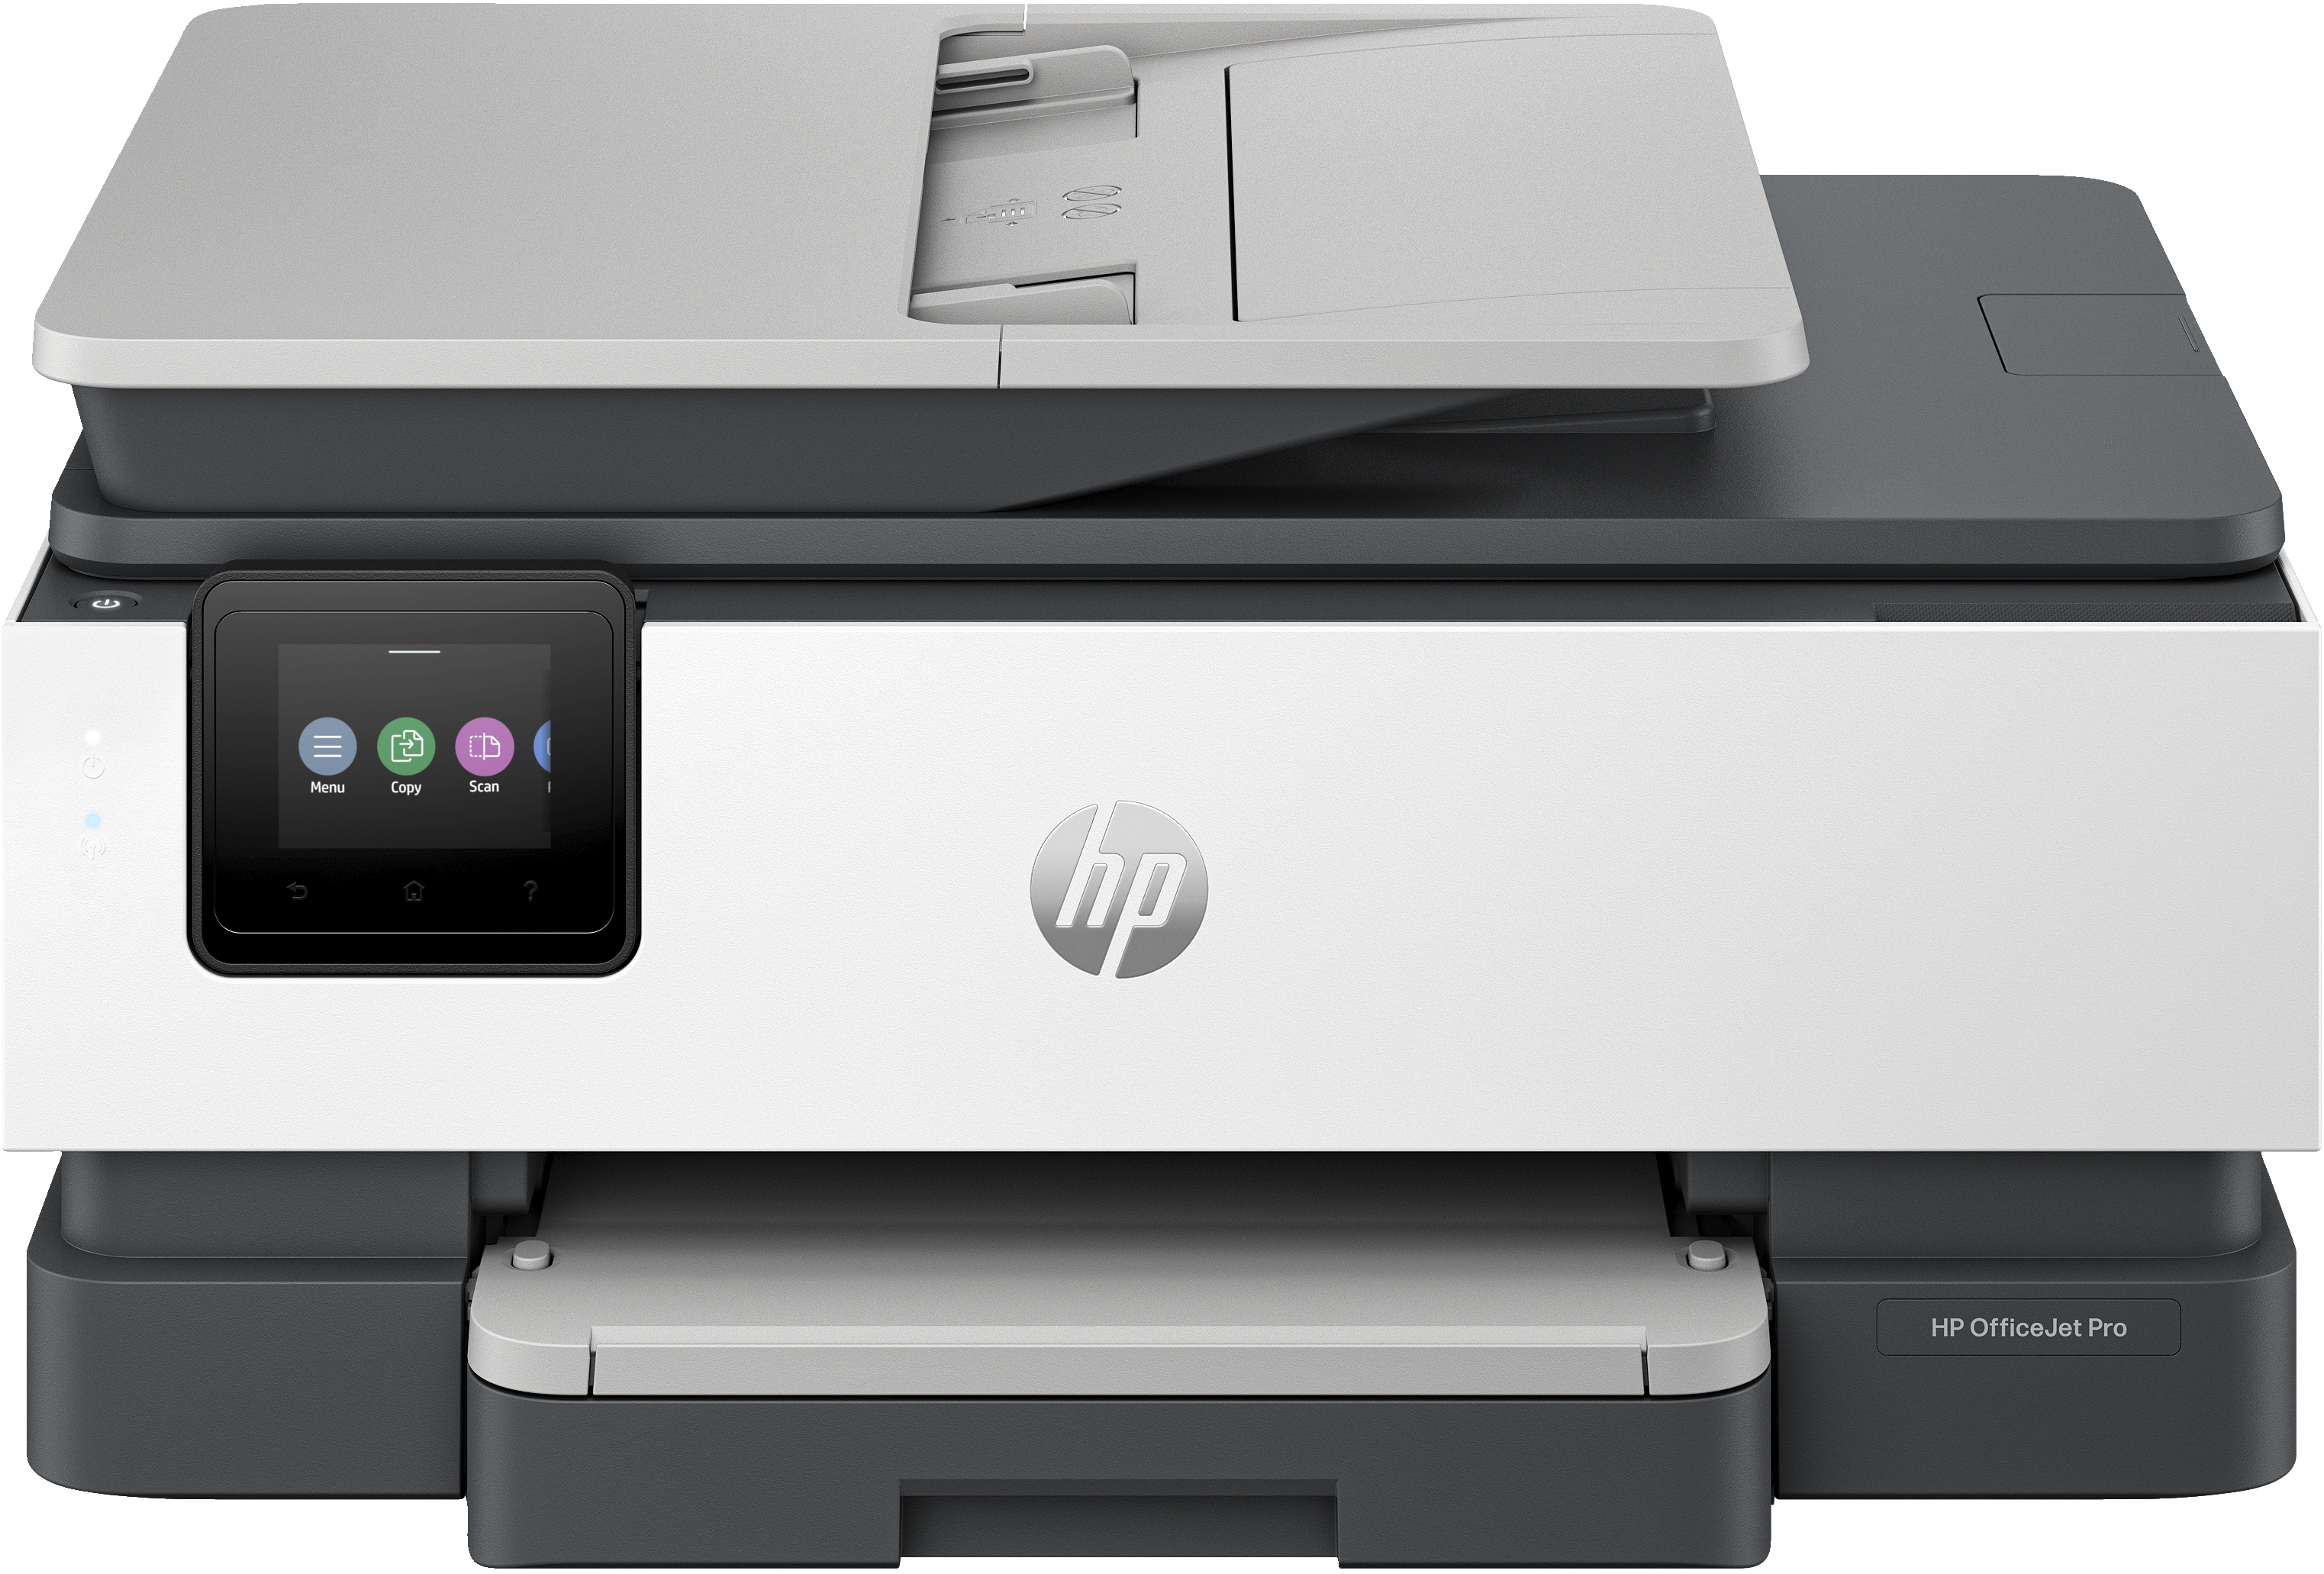 HP OfficeJet Pro Stampante multifunzione HP 8135e, Colore, Stampante per Casa, Stampa, copia, scansione, fax, idonea a HP Instant Ink; alimentatore automatico di documenti; touchscreen; Modalit silenziosa; Stampa tramite VPN con HP+